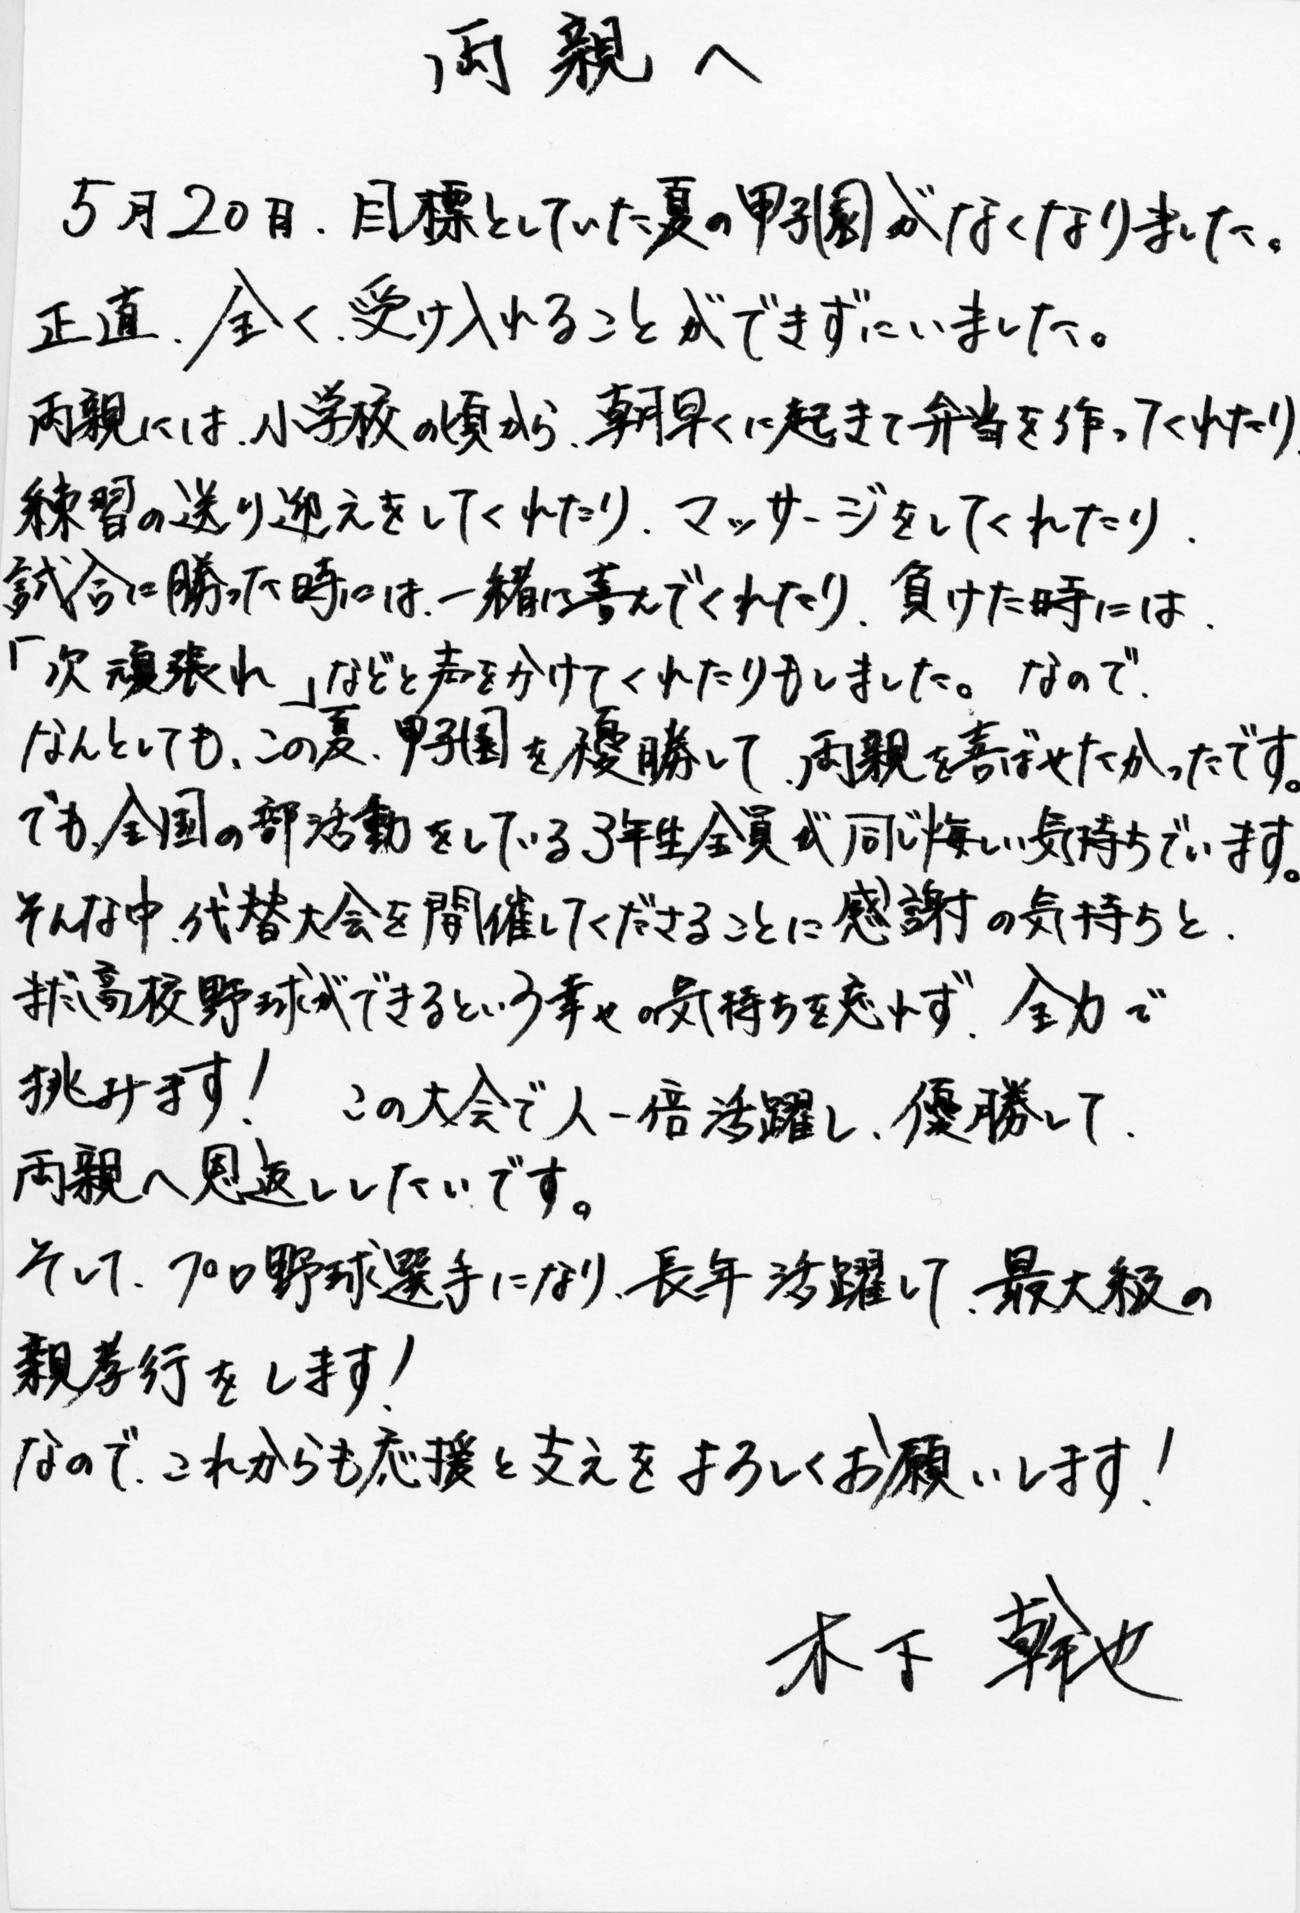 横浜・木下幹也から両親への手紙